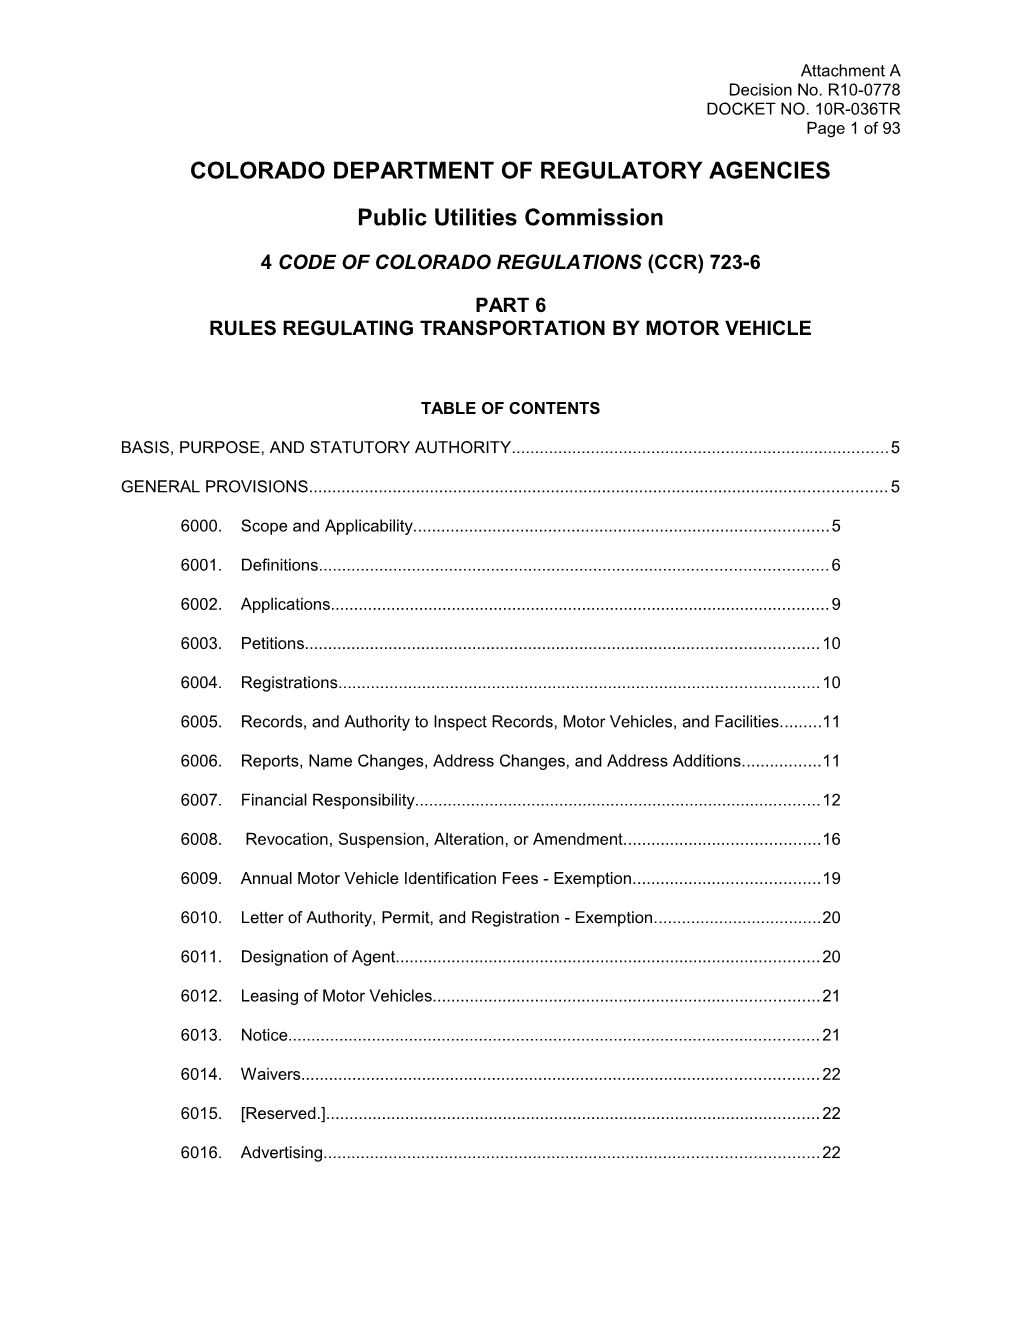 Colorado Department of Regulatory Agencies s1